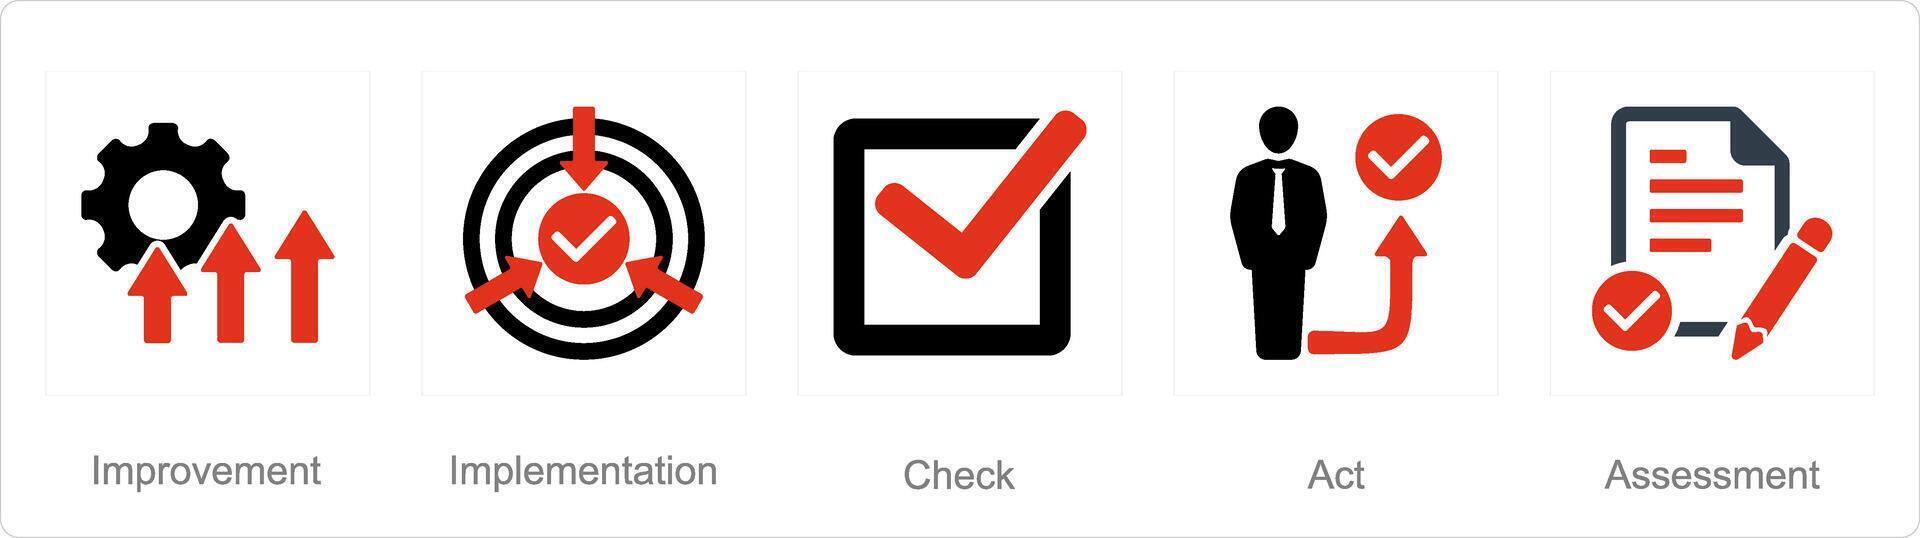 un' impostato di 5 azione Piano icone come miglioramento, implementazione, dai un'occhiata vettore